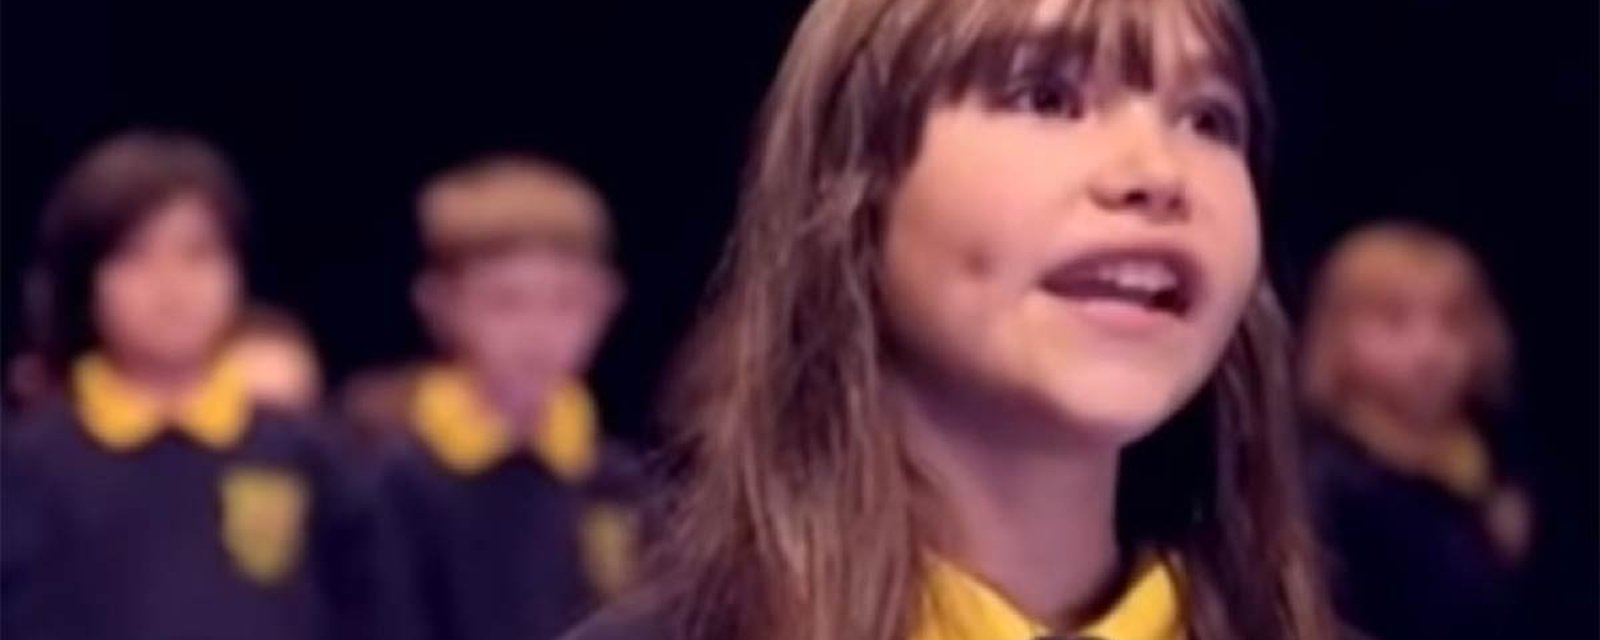 Une jeune fille autiste de 10 ans éblouit la planète en chantant Hallelujah de Leonard Cohen!